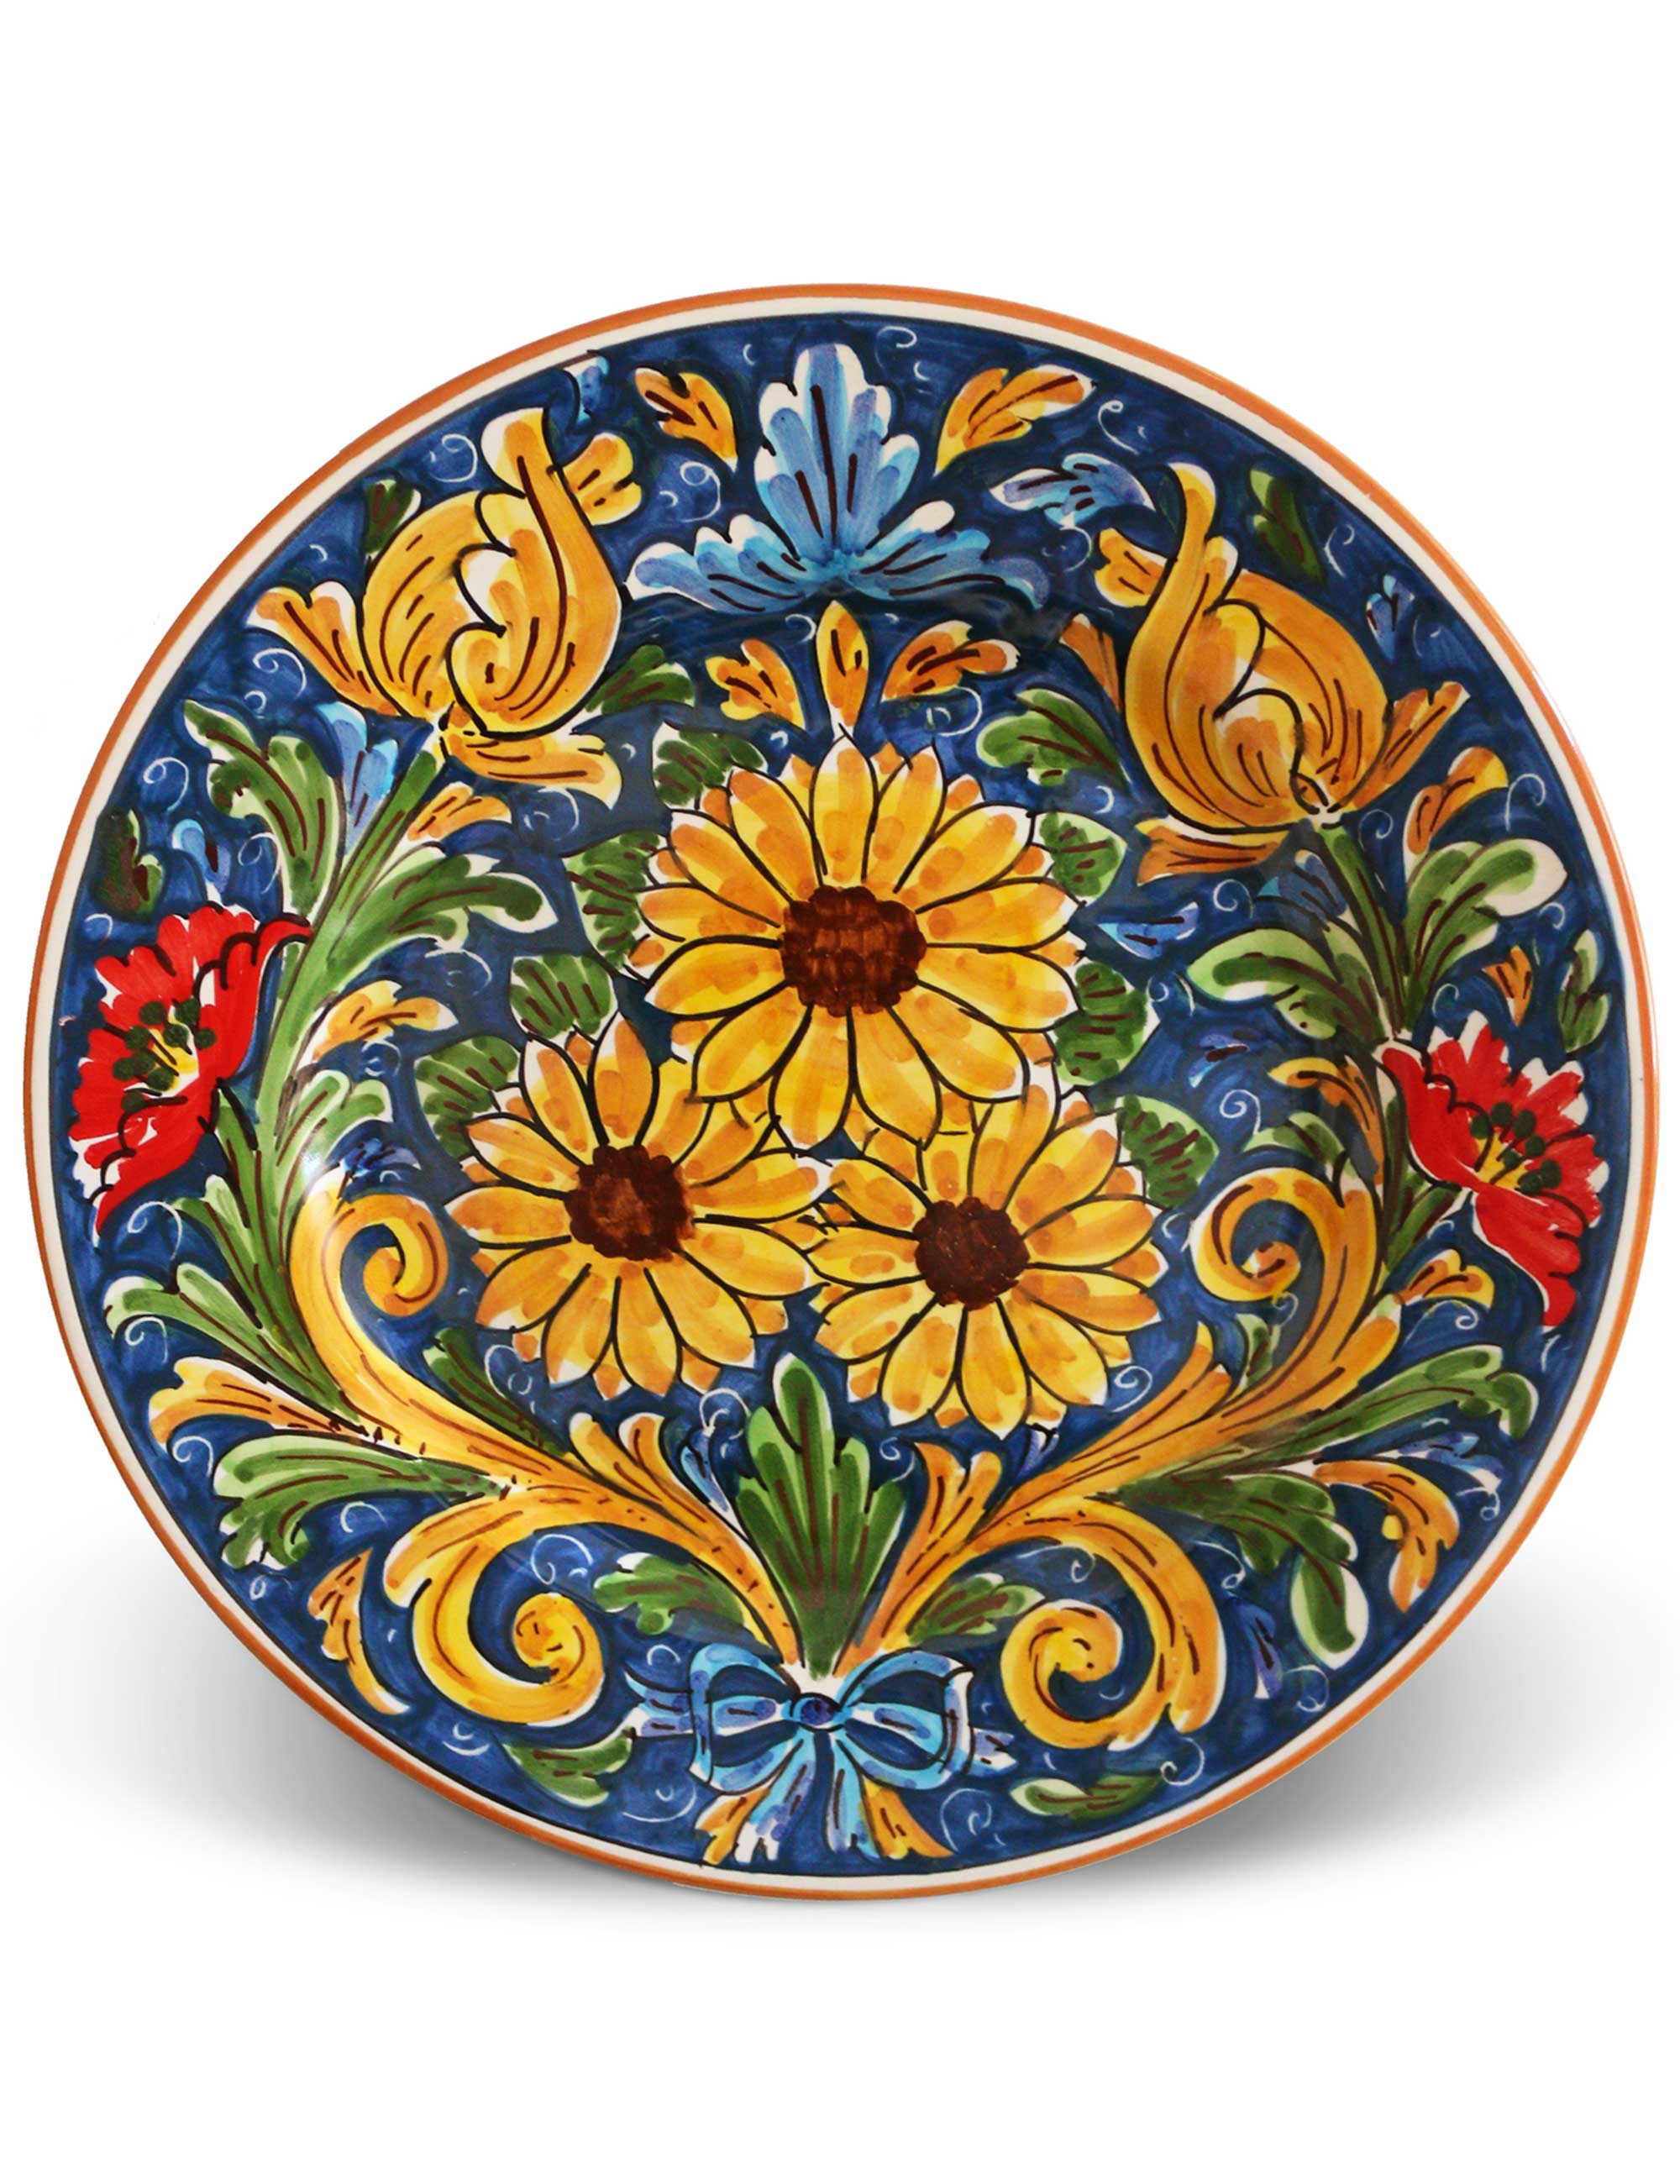 Caltagirone decorated ceramic flat plate